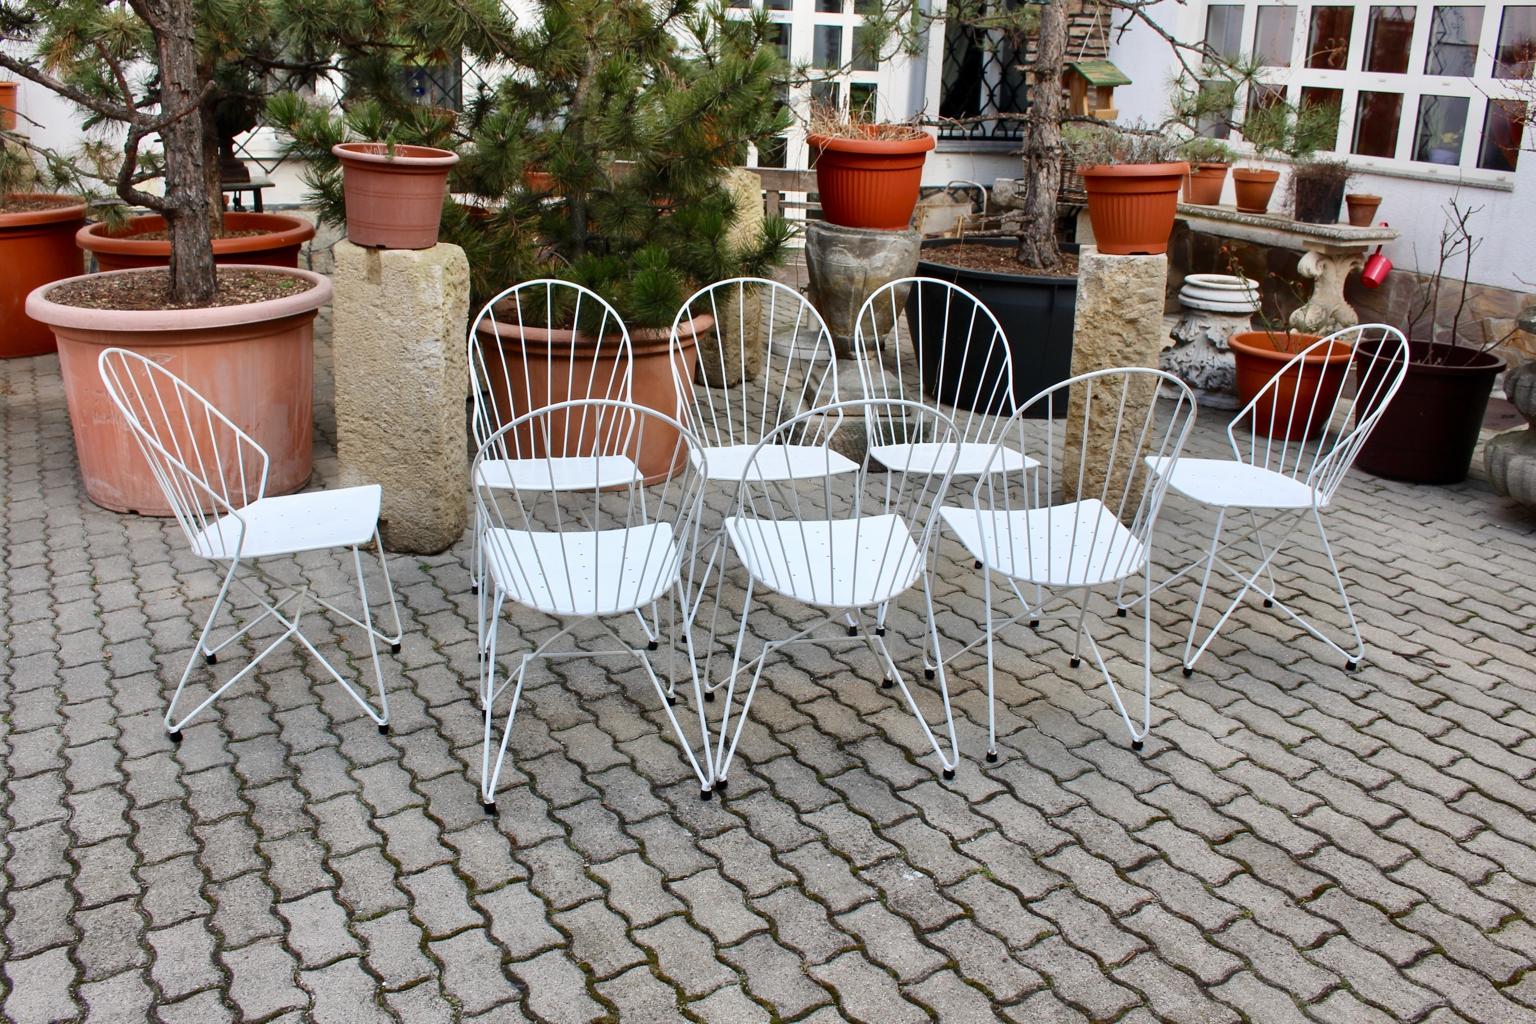 Ensemble de 8 élégants fauteuils en métal blanc de style Mid Century Modern conçus par J.O.Wladar & V. Mödlhammer Vienne circa 1955 pour le Sen de Sonett Karl Fostel. Erben.
Les chaises de jardin étaient également fabriquées en fil d'acier et en